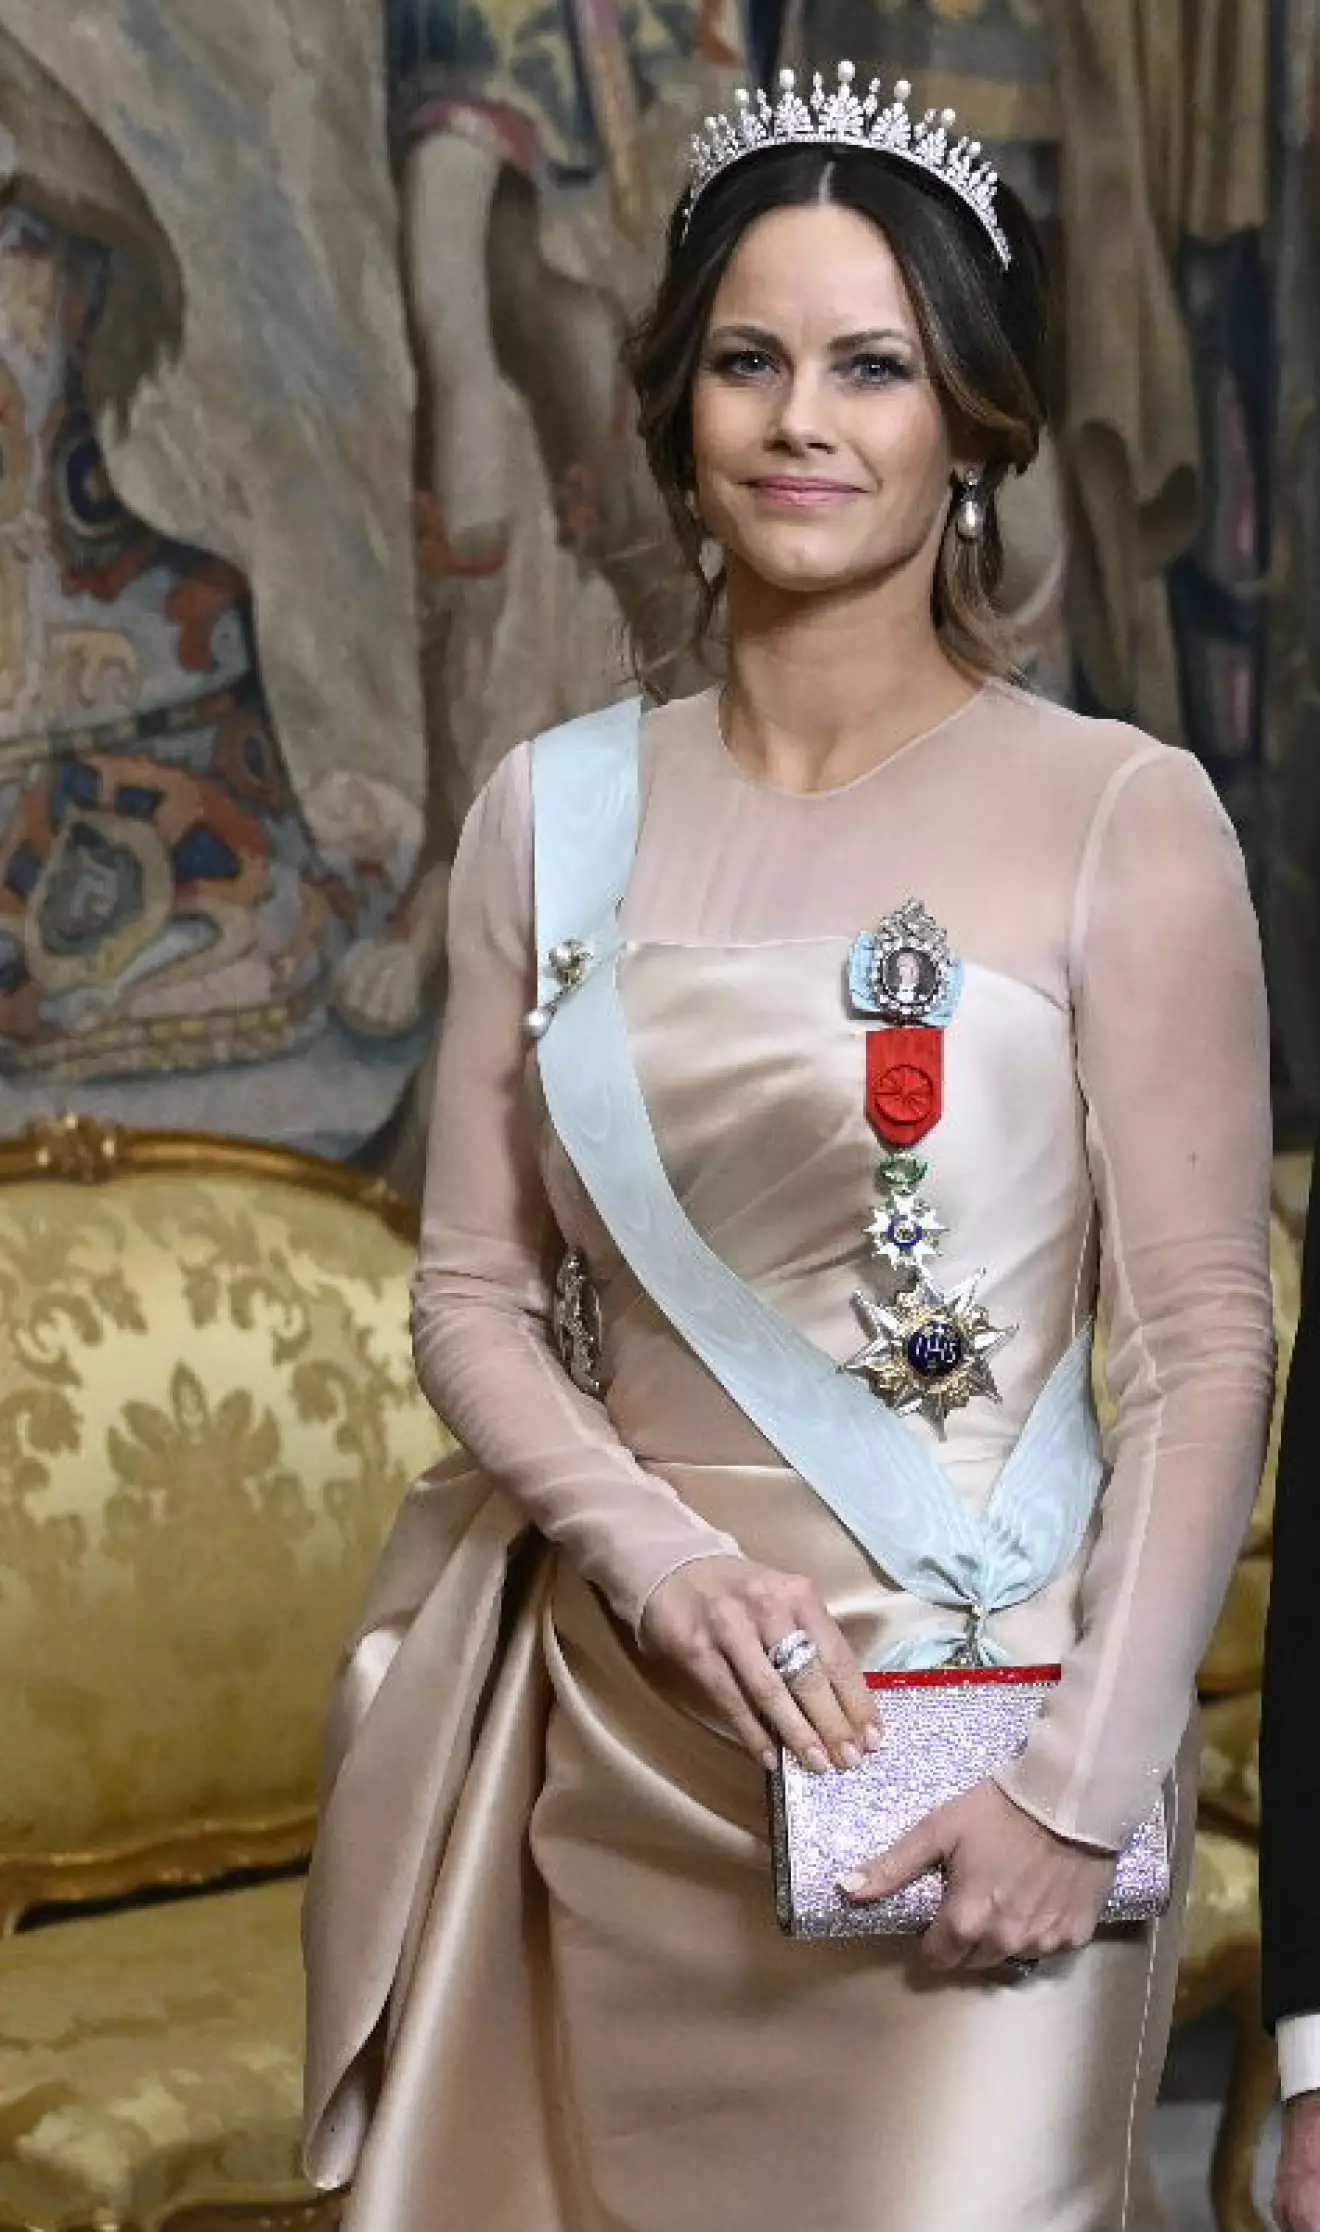 Prinsessan Sofia i sin Lars Wallin-klänning av mikado-taft